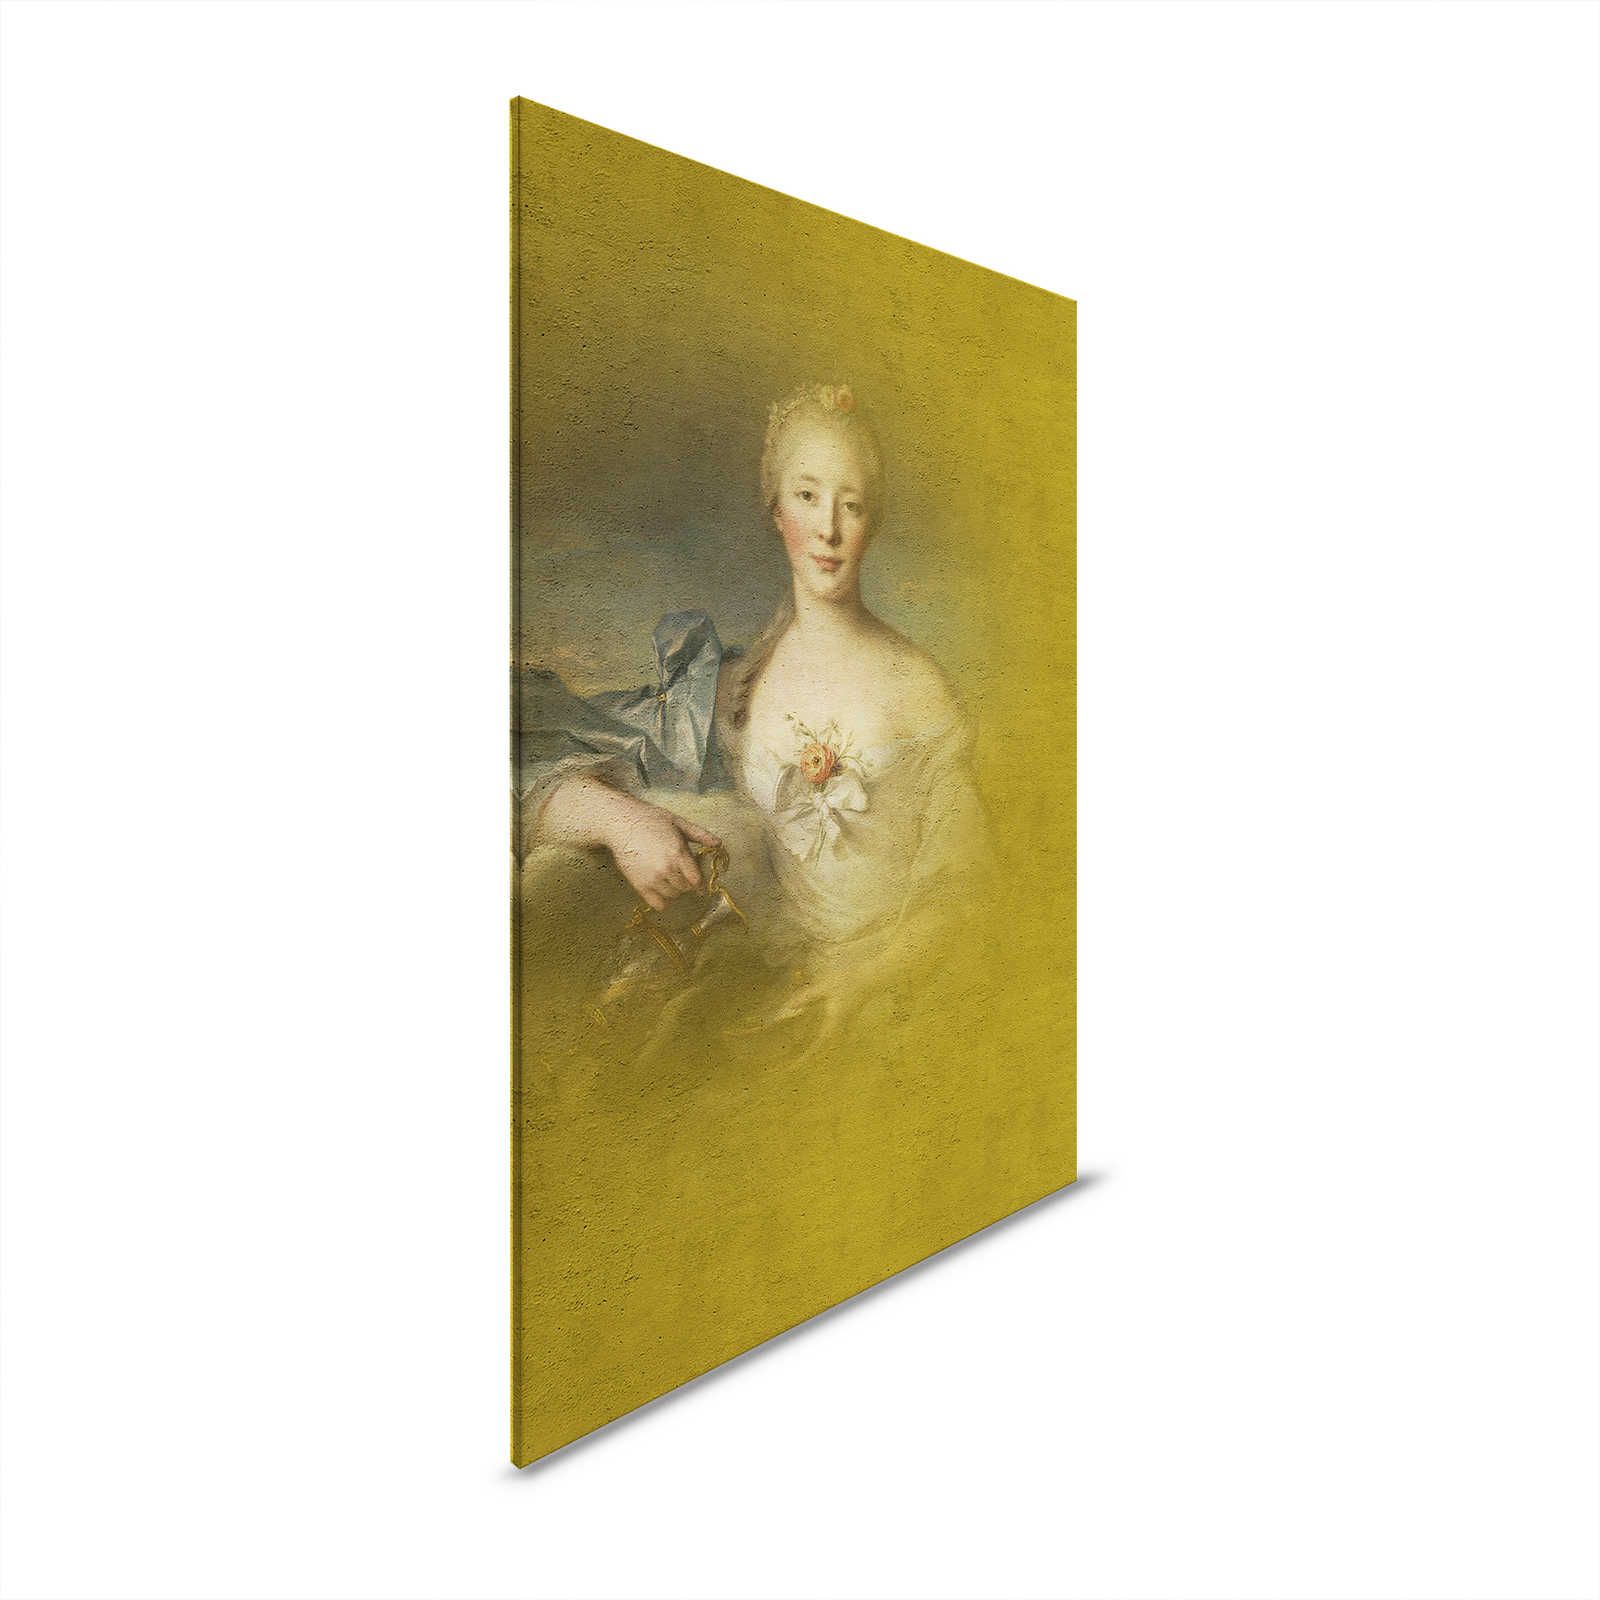 Toile Portrait classique jeune femme - 0,80 m x 1,20 m
